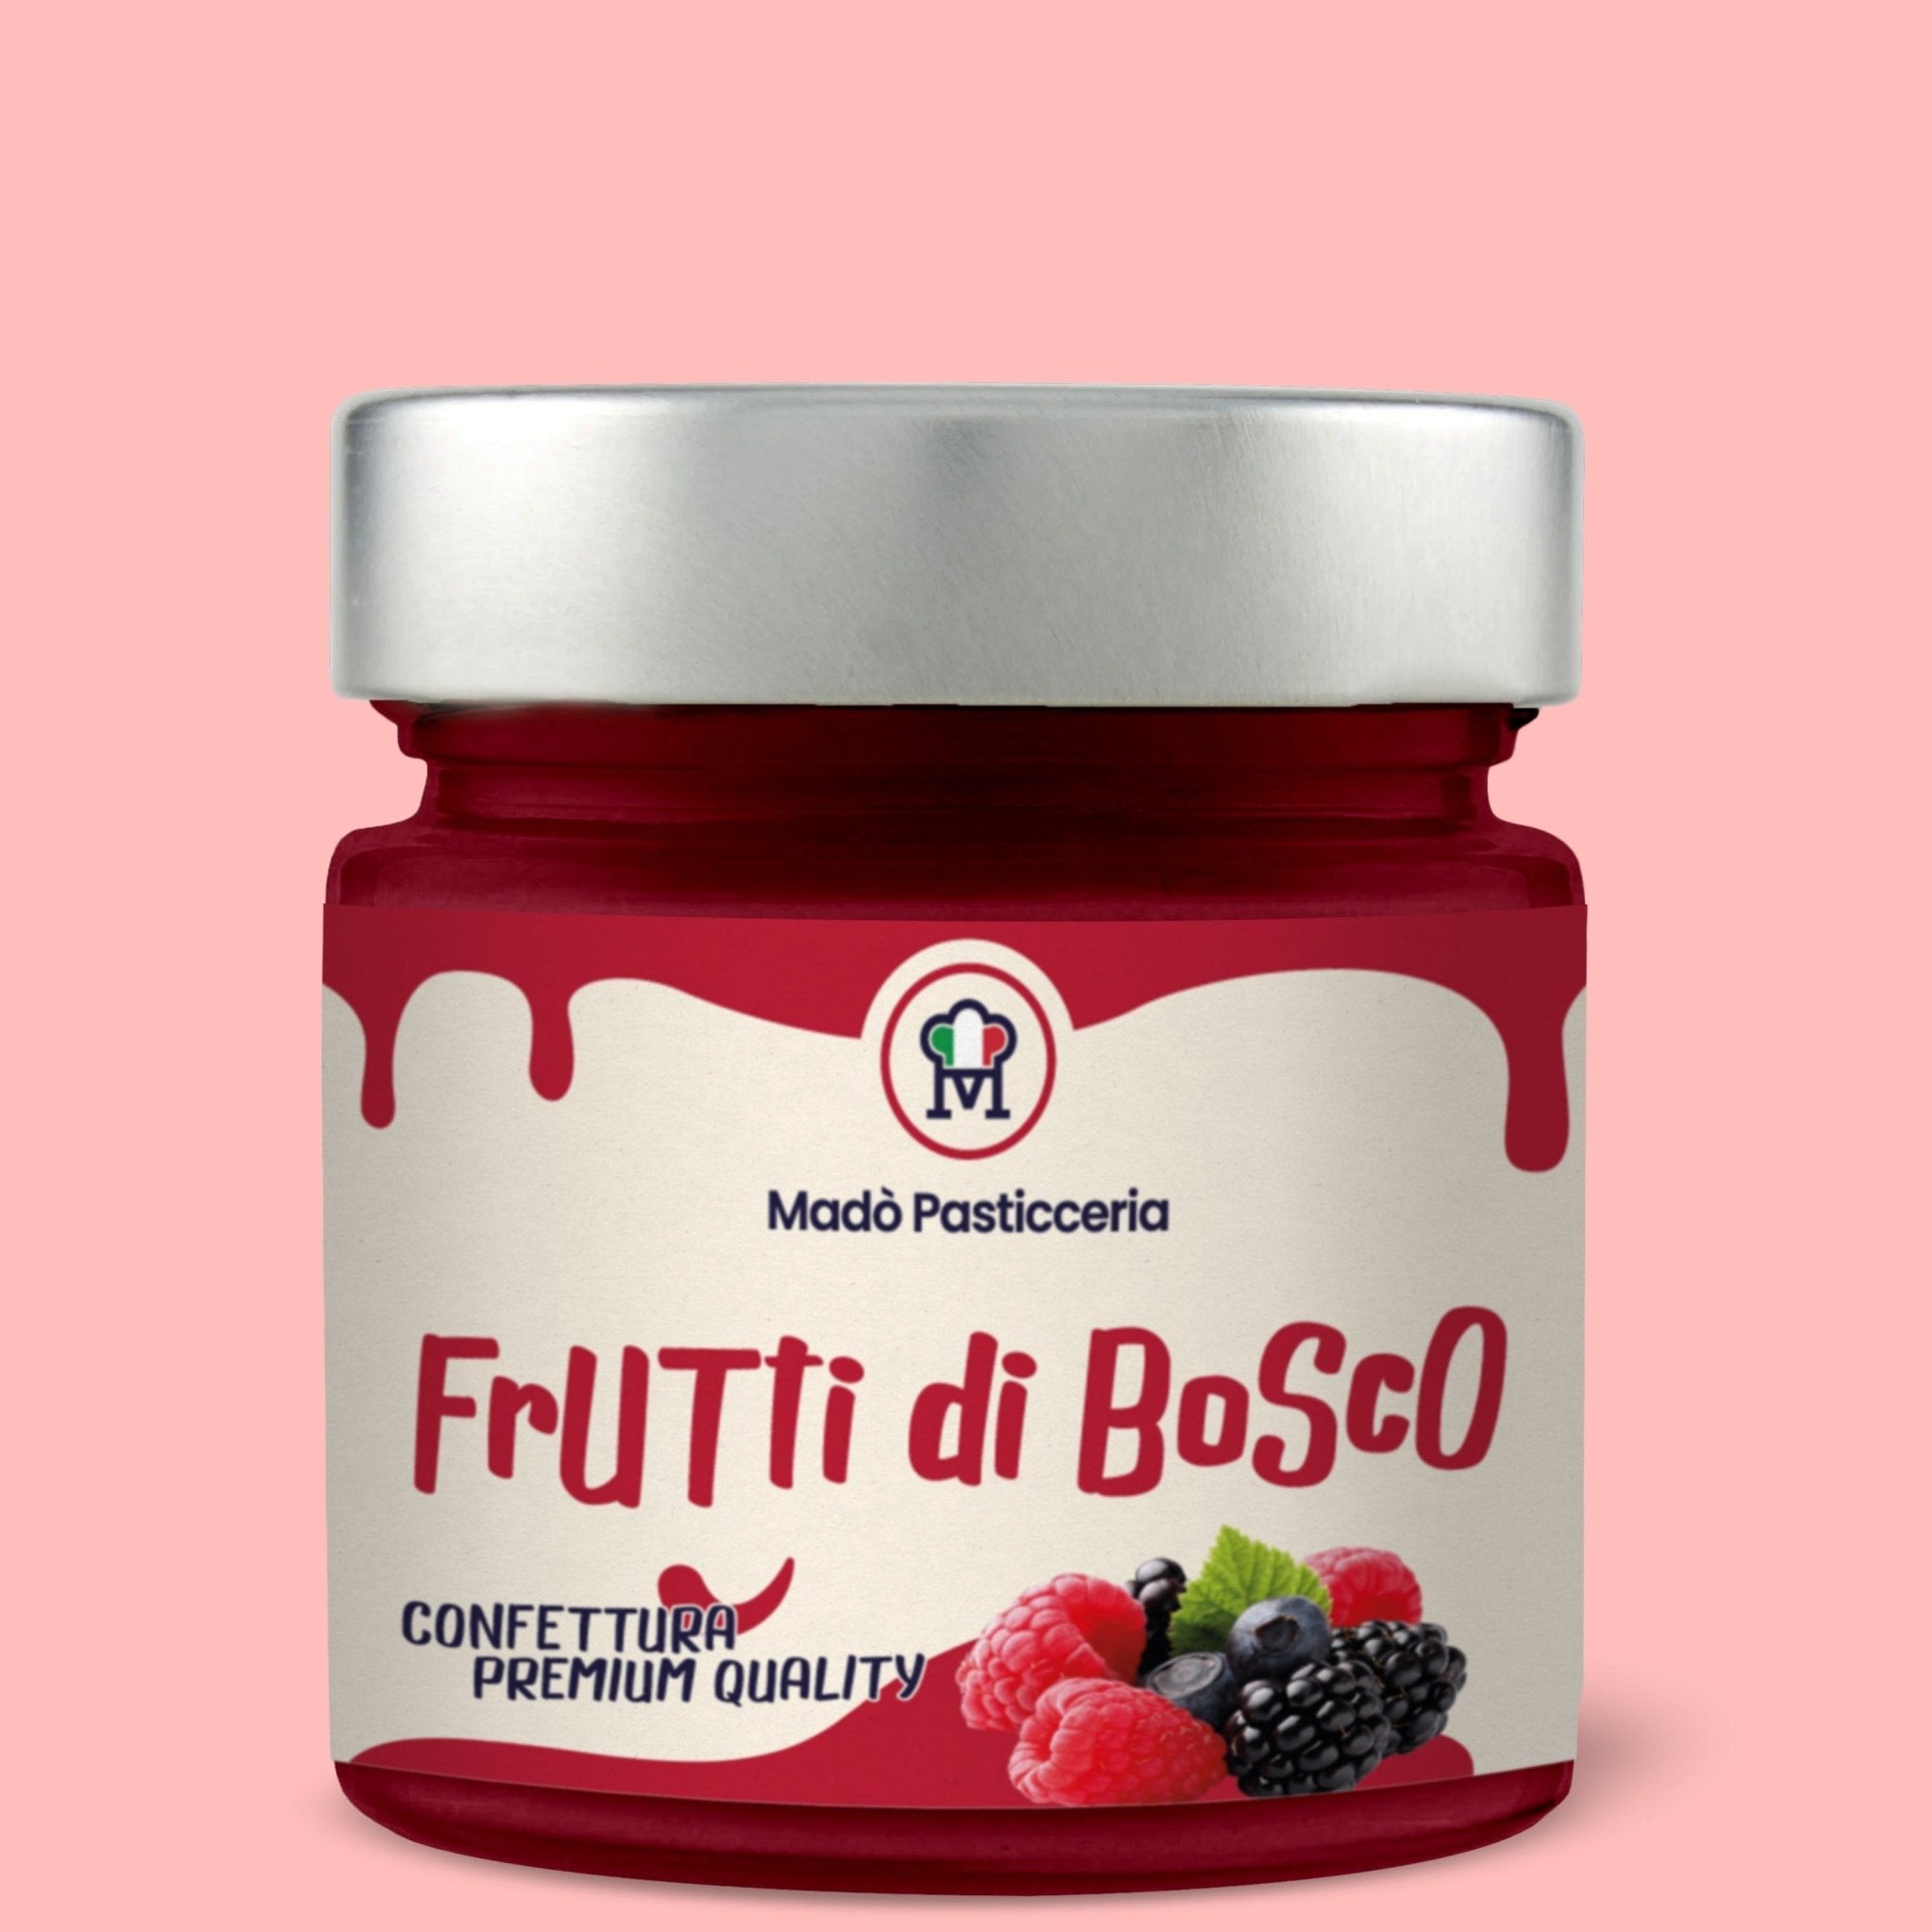 Confettura premium quality "Frutti Di Bosco" - Madò Pasticceria